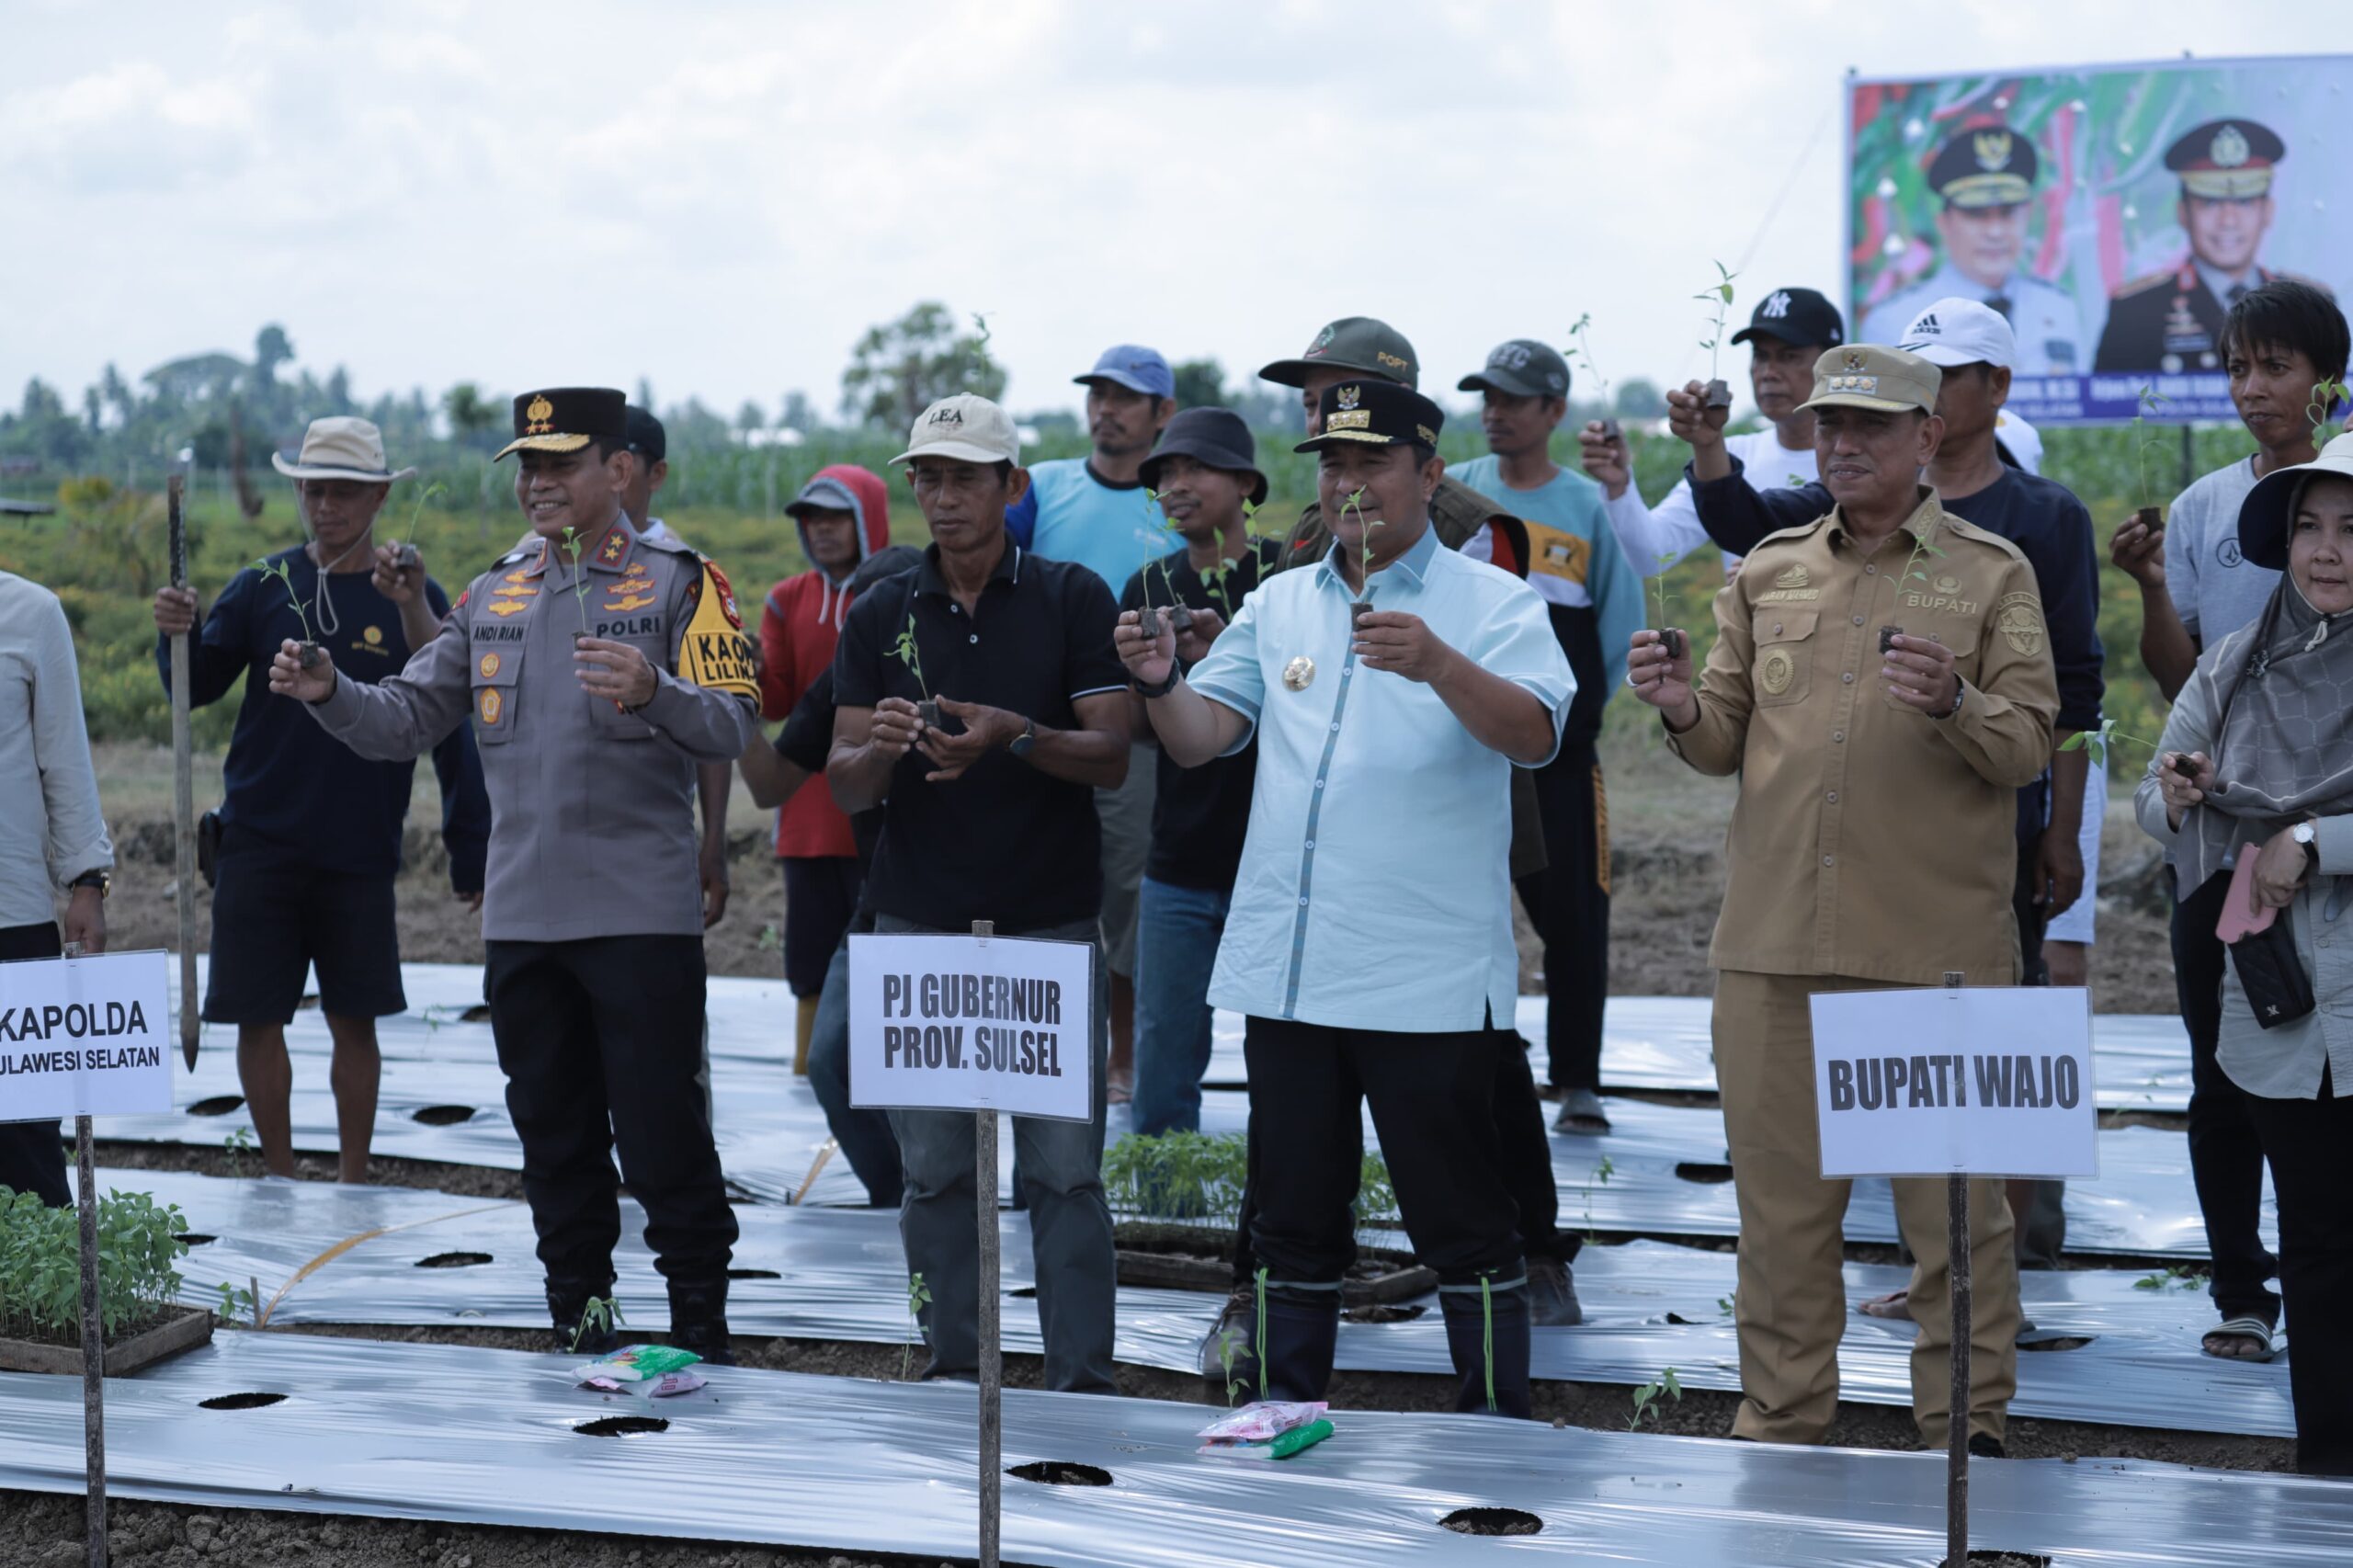 Bersama Kapolda Sulsel dan Bupati Wajo Panen Perdana, Pj Gubernur Sulsel Sebut Harga Cabe Menjanjikan